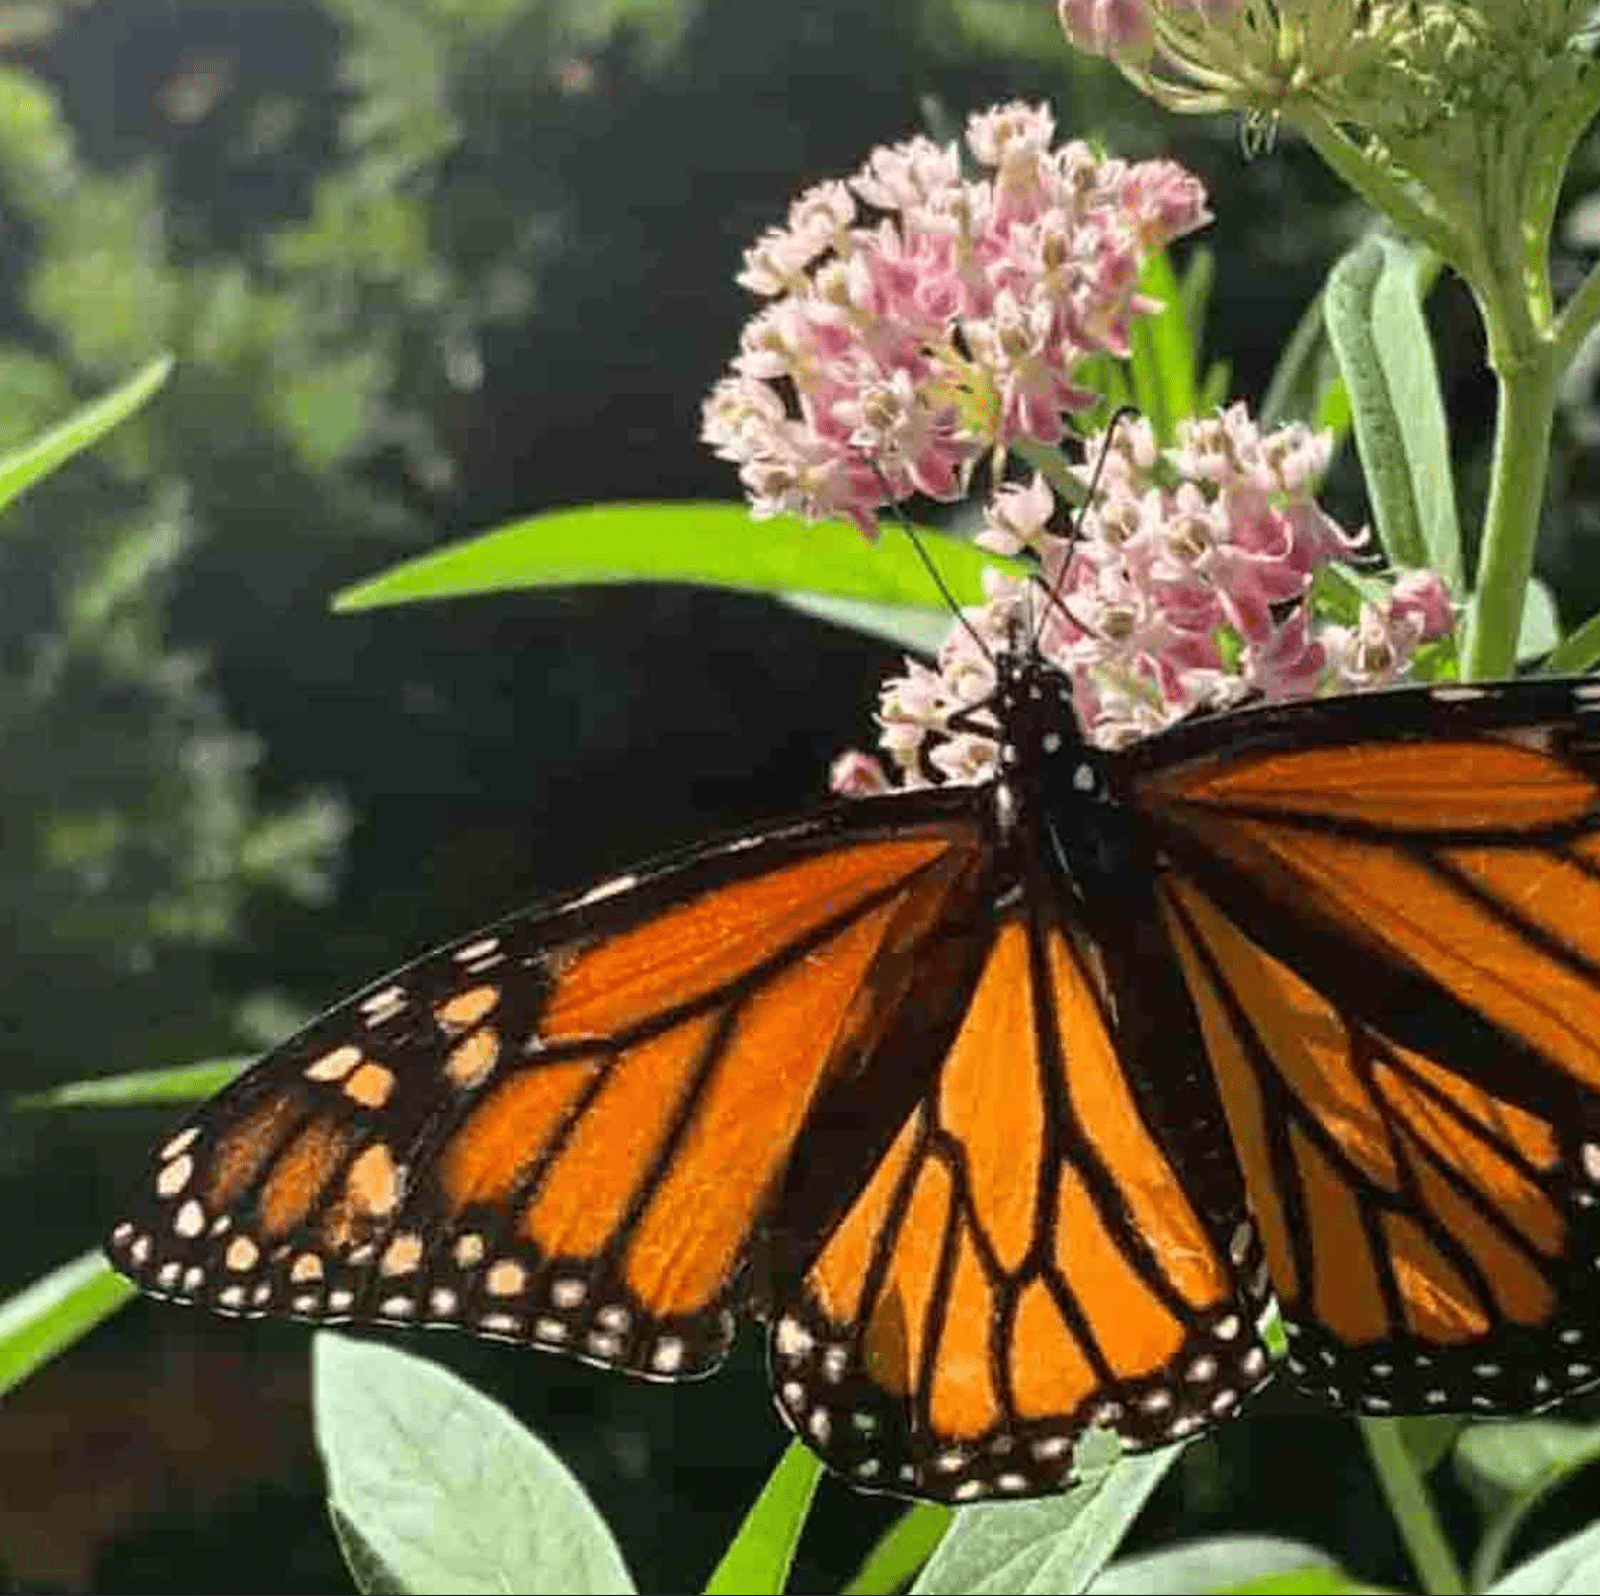 یک تصویر فشرده JPEG از یک پروانه سلطنتی